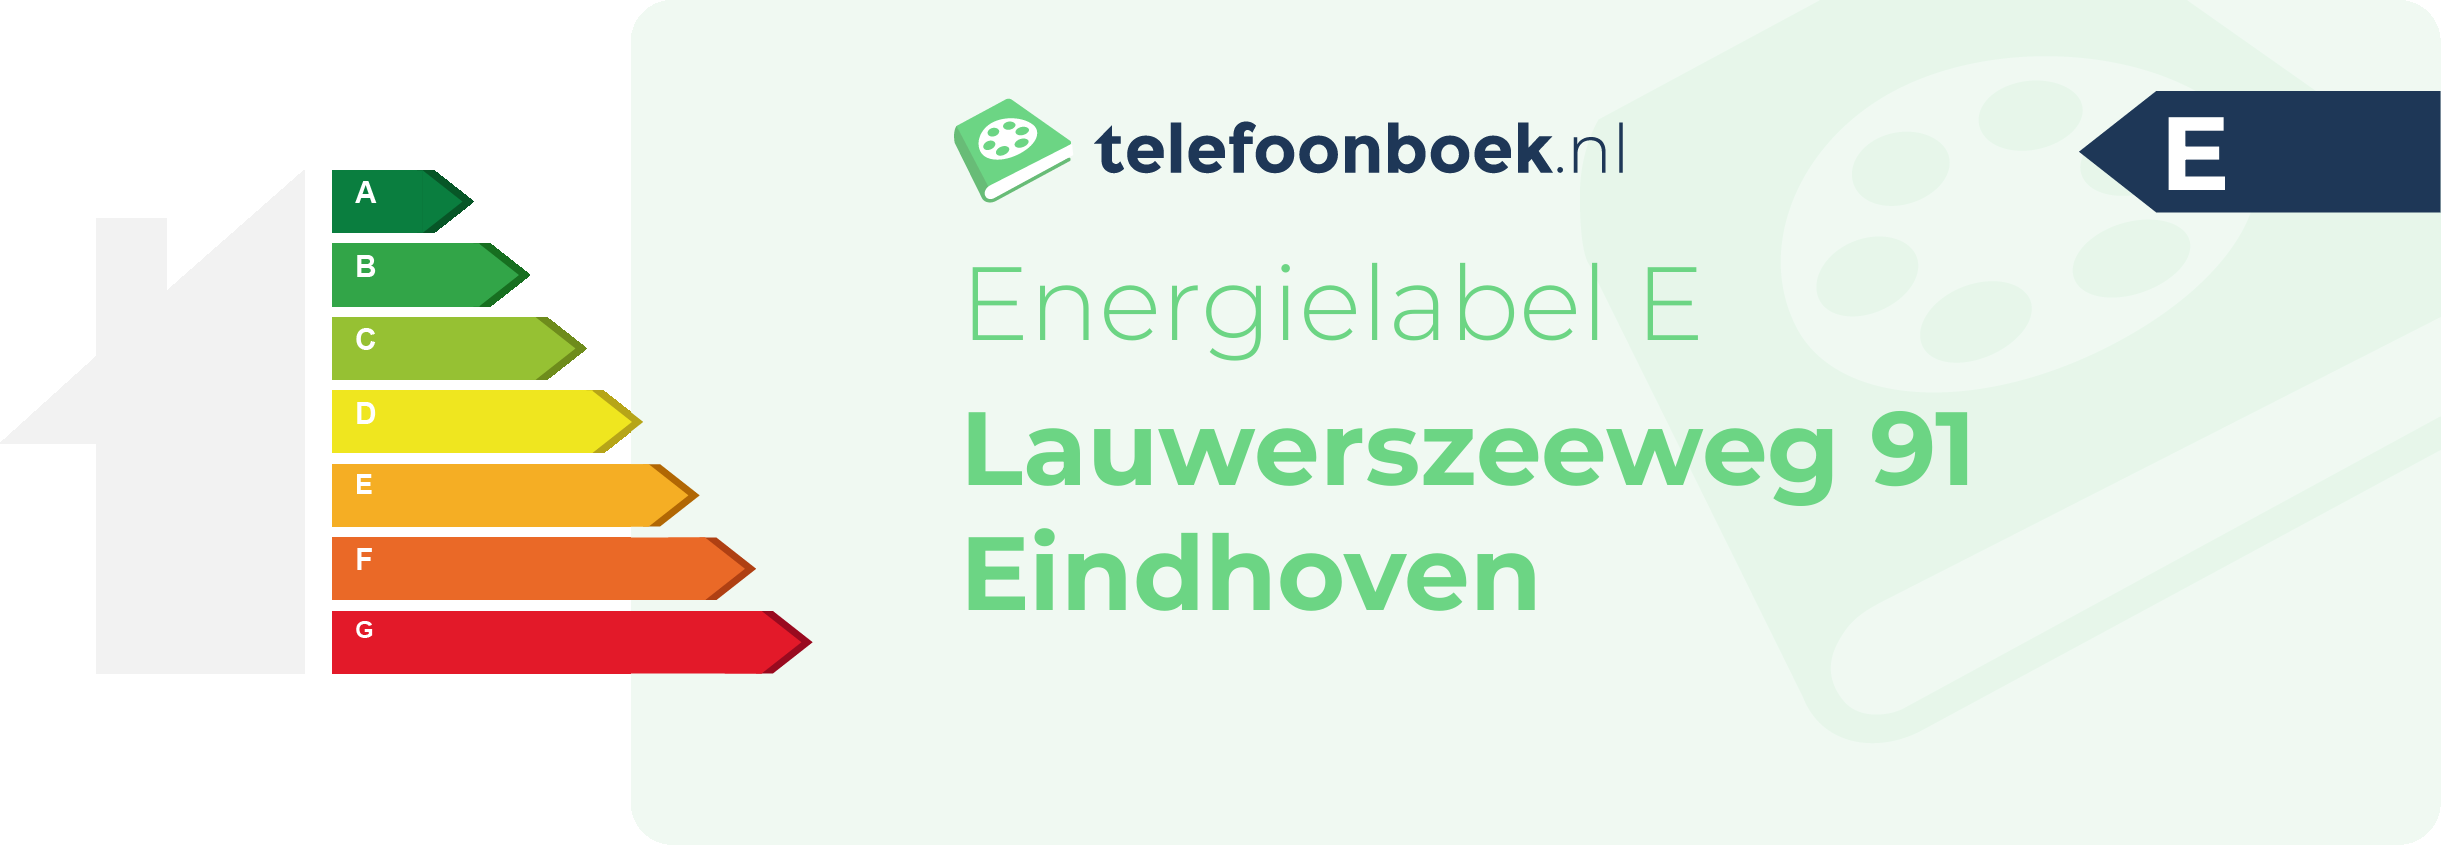 Energielabel Lauwerszeeweg 91 Eindhoven